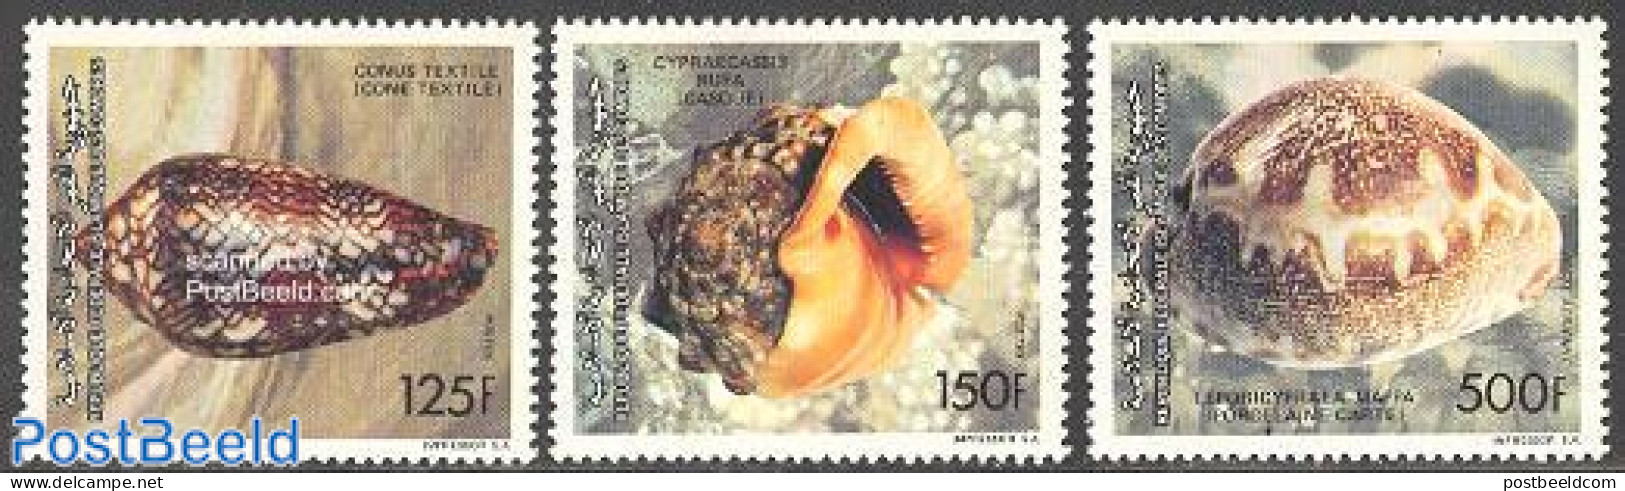 Comoros 1992 Shells 3v, Mint NH, Nature - Shells & Crustaceans - Meereswelt